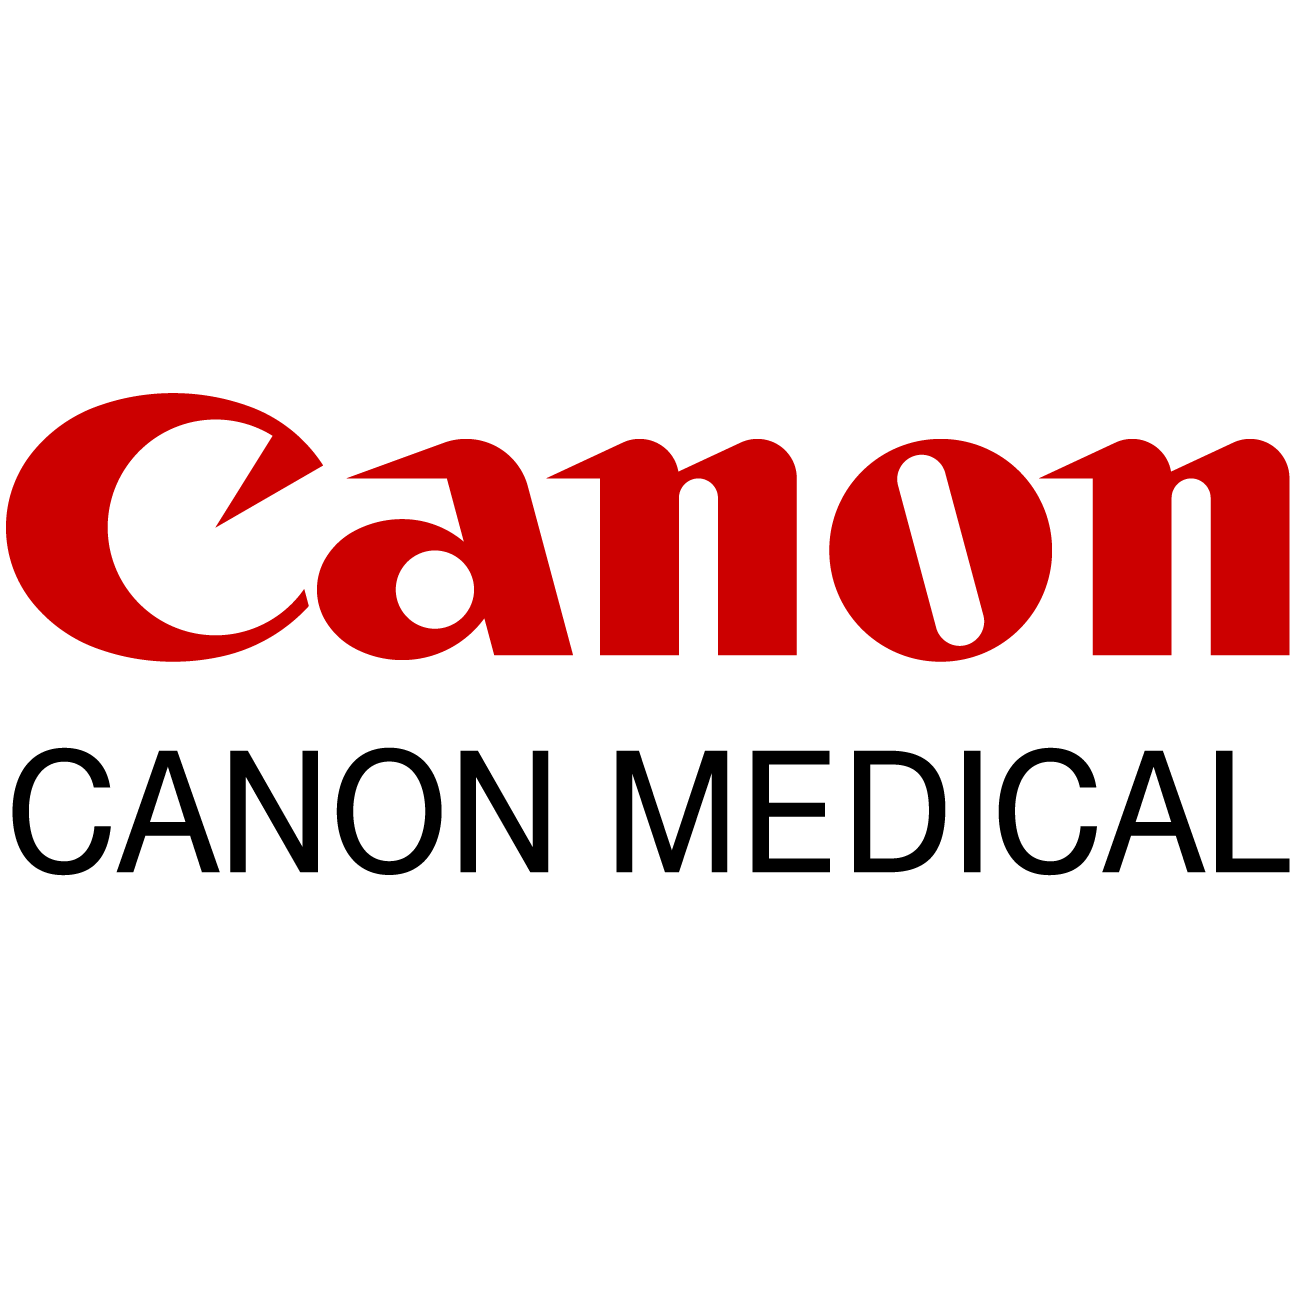 Canon Medical Logo - Canon Medical Launches Healthy Sonographer Program